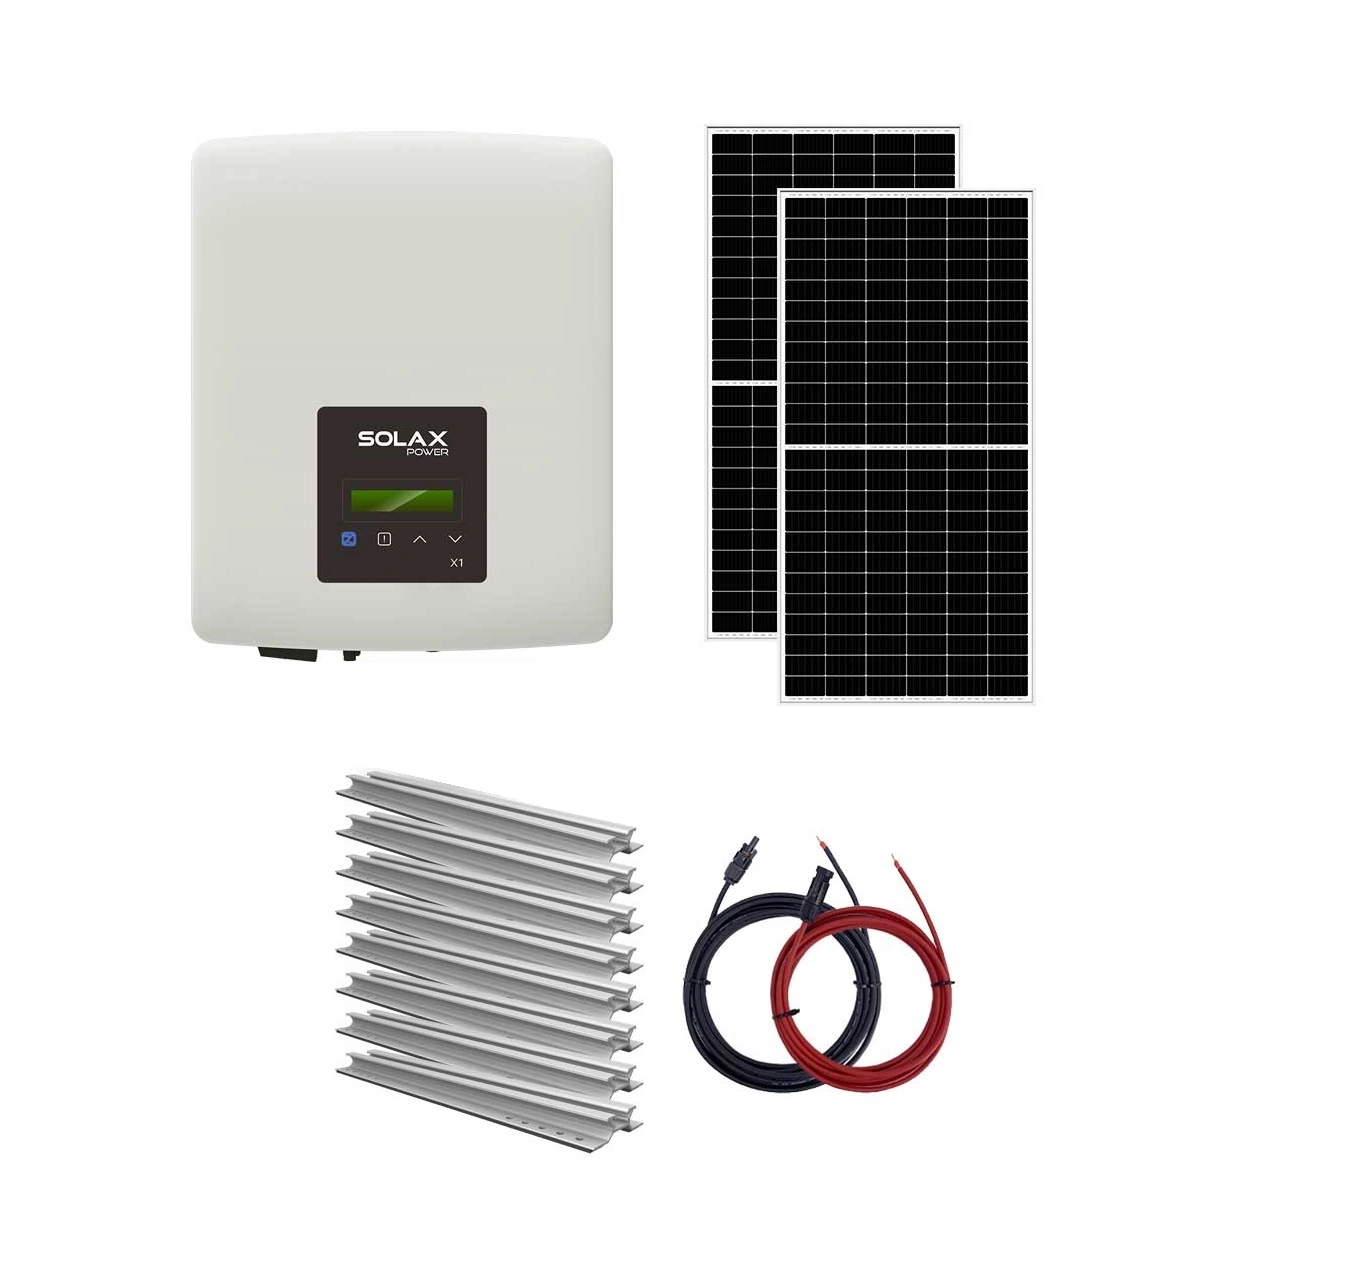 Sisteme fotovoltaice on-grid - Sistem fotovoltaic On-Grid 5 kW monofazat Solax - tigla, climasoft.ro